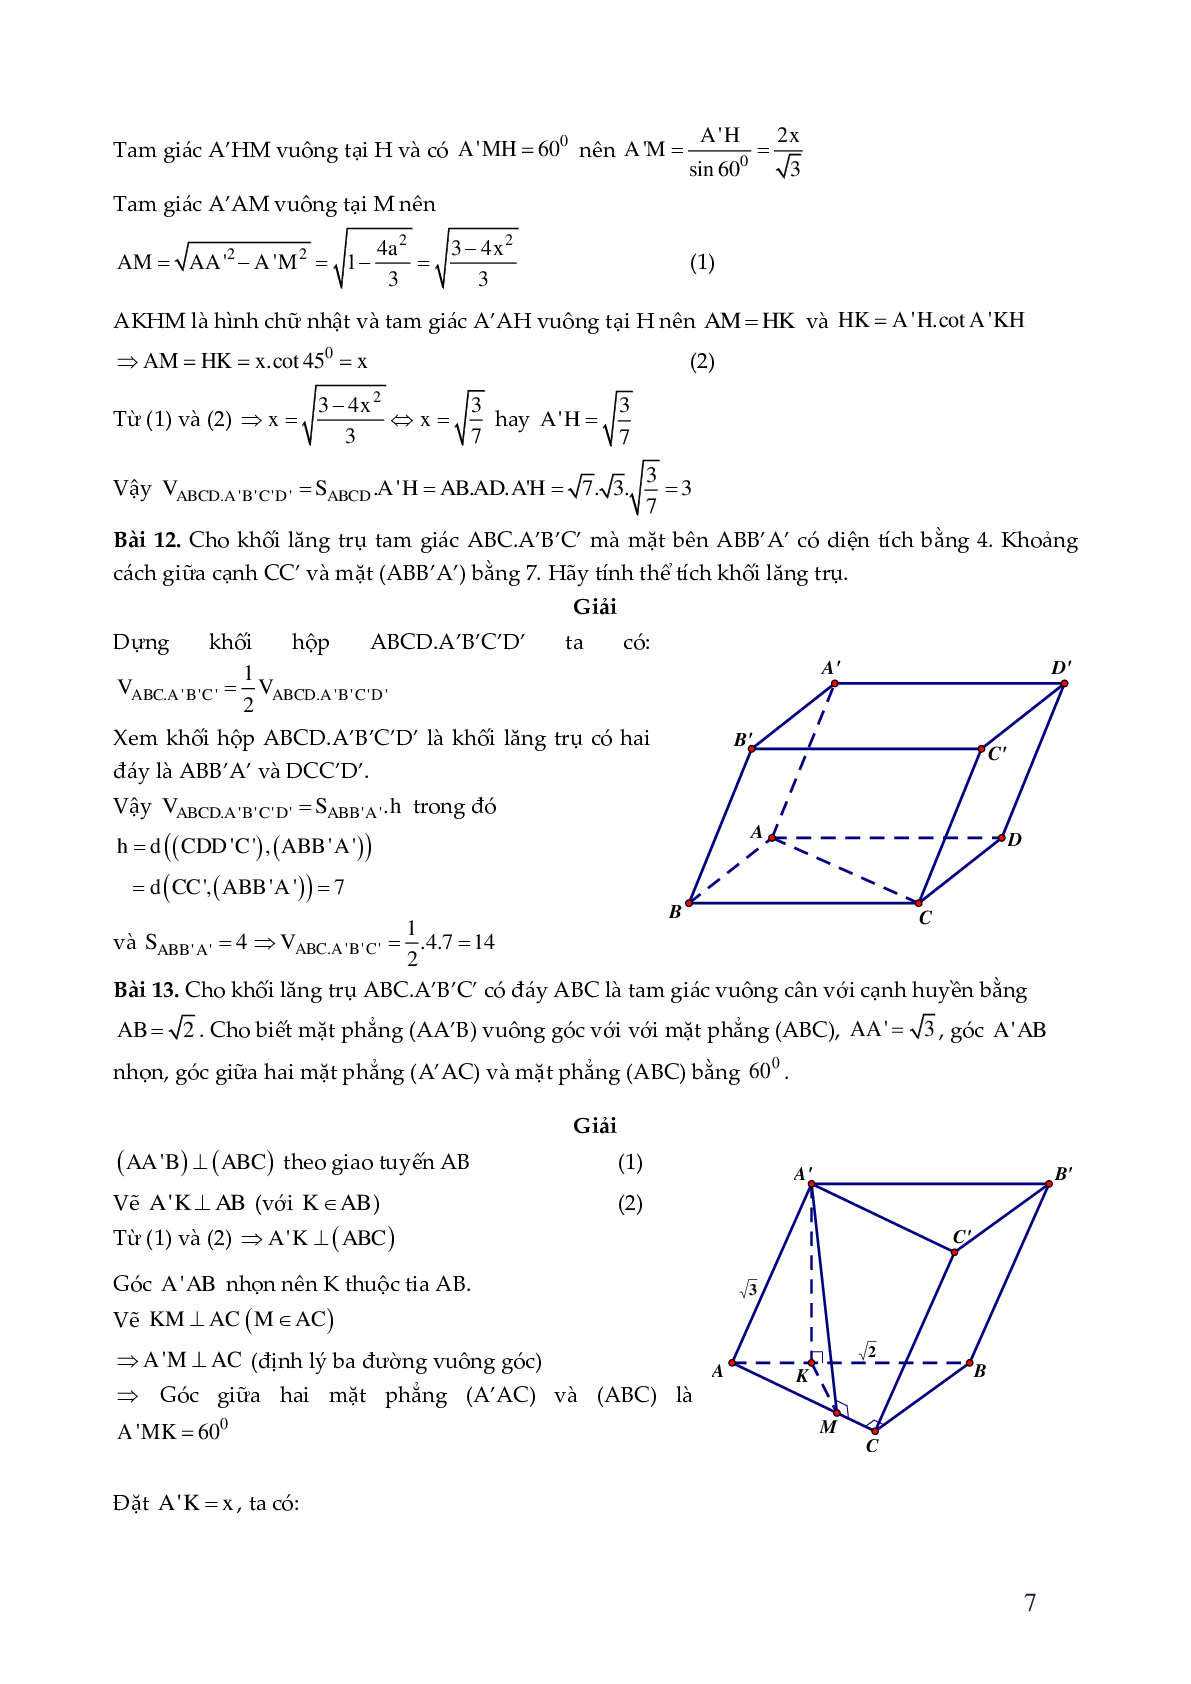 29 bài toán hình lăng trụ xiên - có đáp án chi tiêt (trang 7)